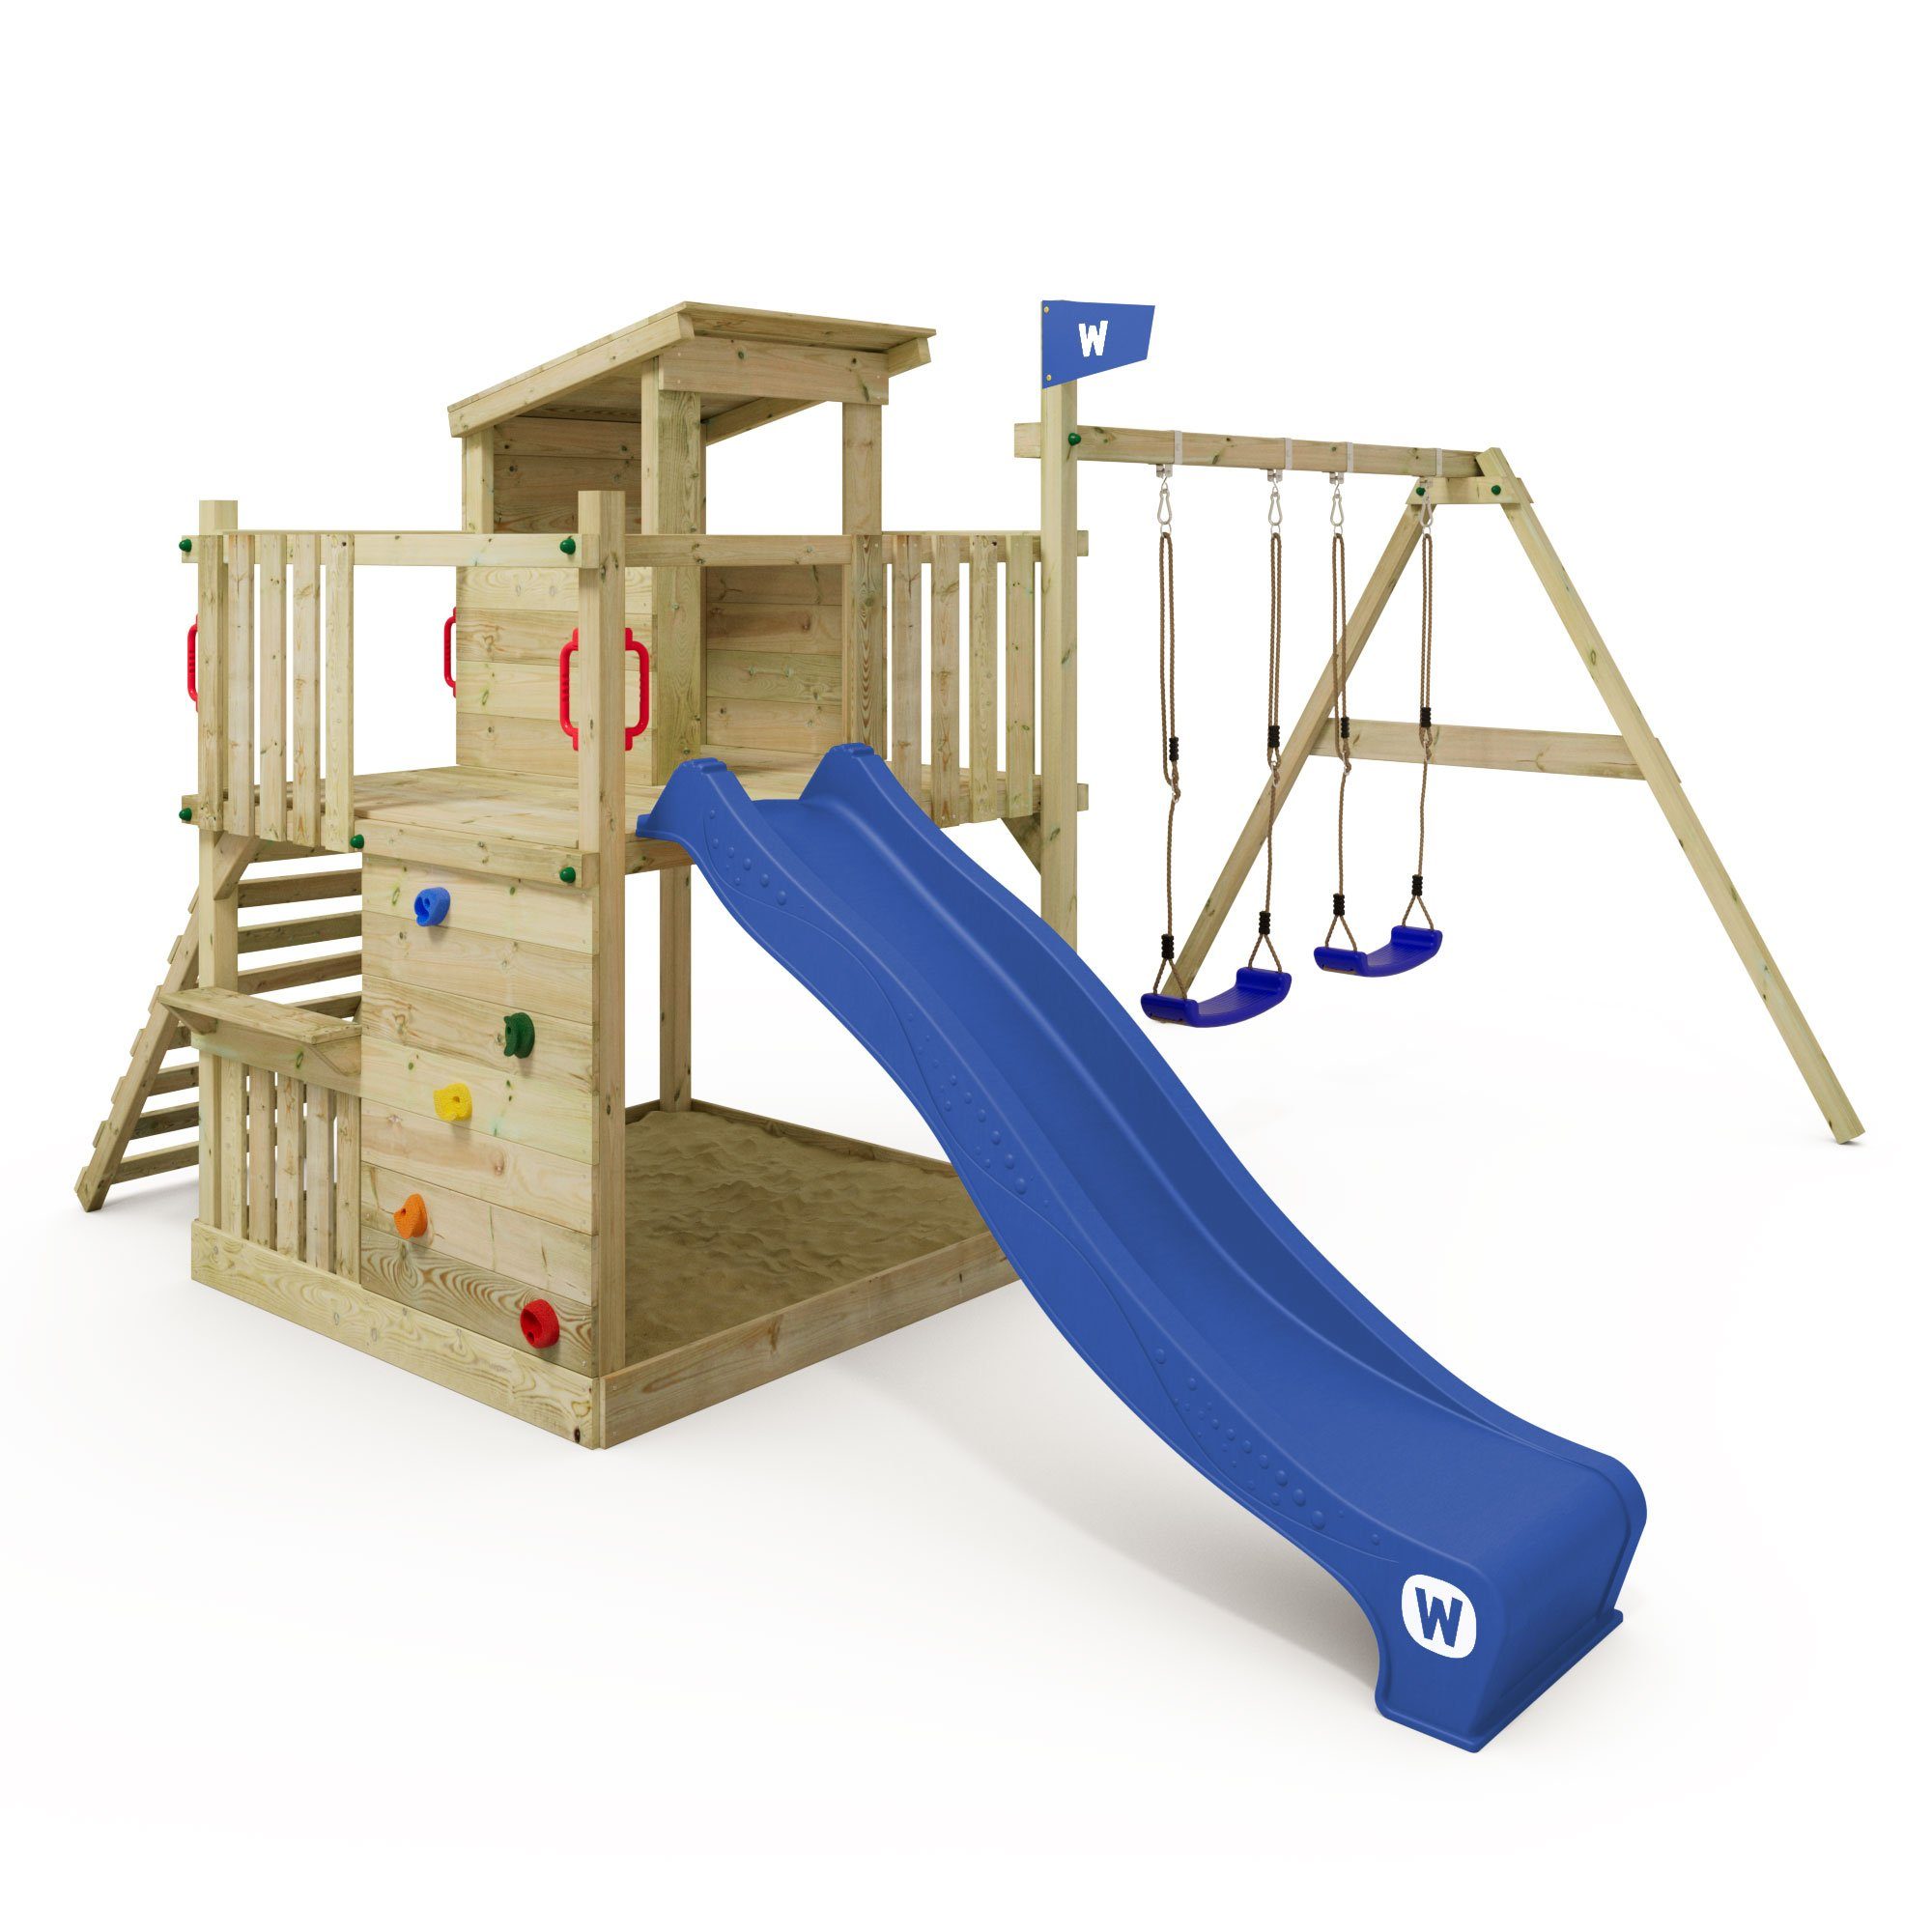 Wickey Klettergerüst Spielturm Smart Cabin mit Rutsche und großem Sandkasten,  10-jahre Garantie*, Spielhaus mit flachem Holzdach und Sitzbank